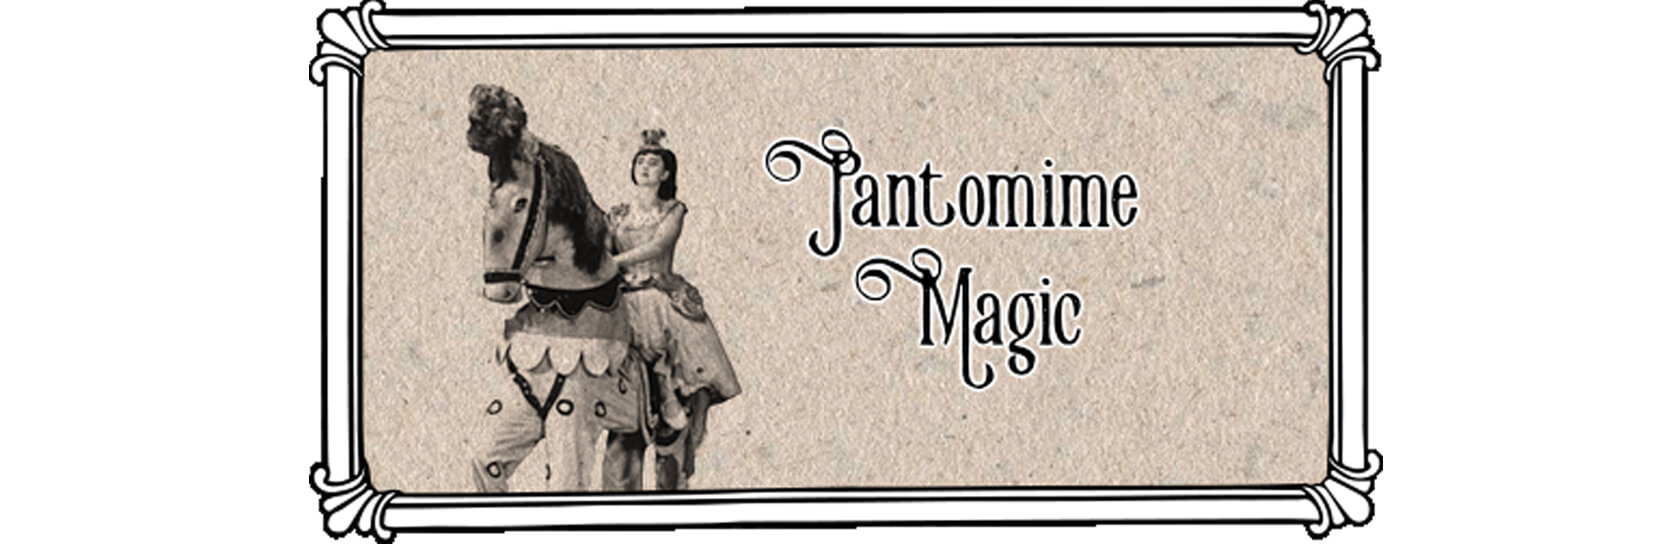 Darlington Hippodrome Teacher Notes - Topic 3 - Pantomime Magic